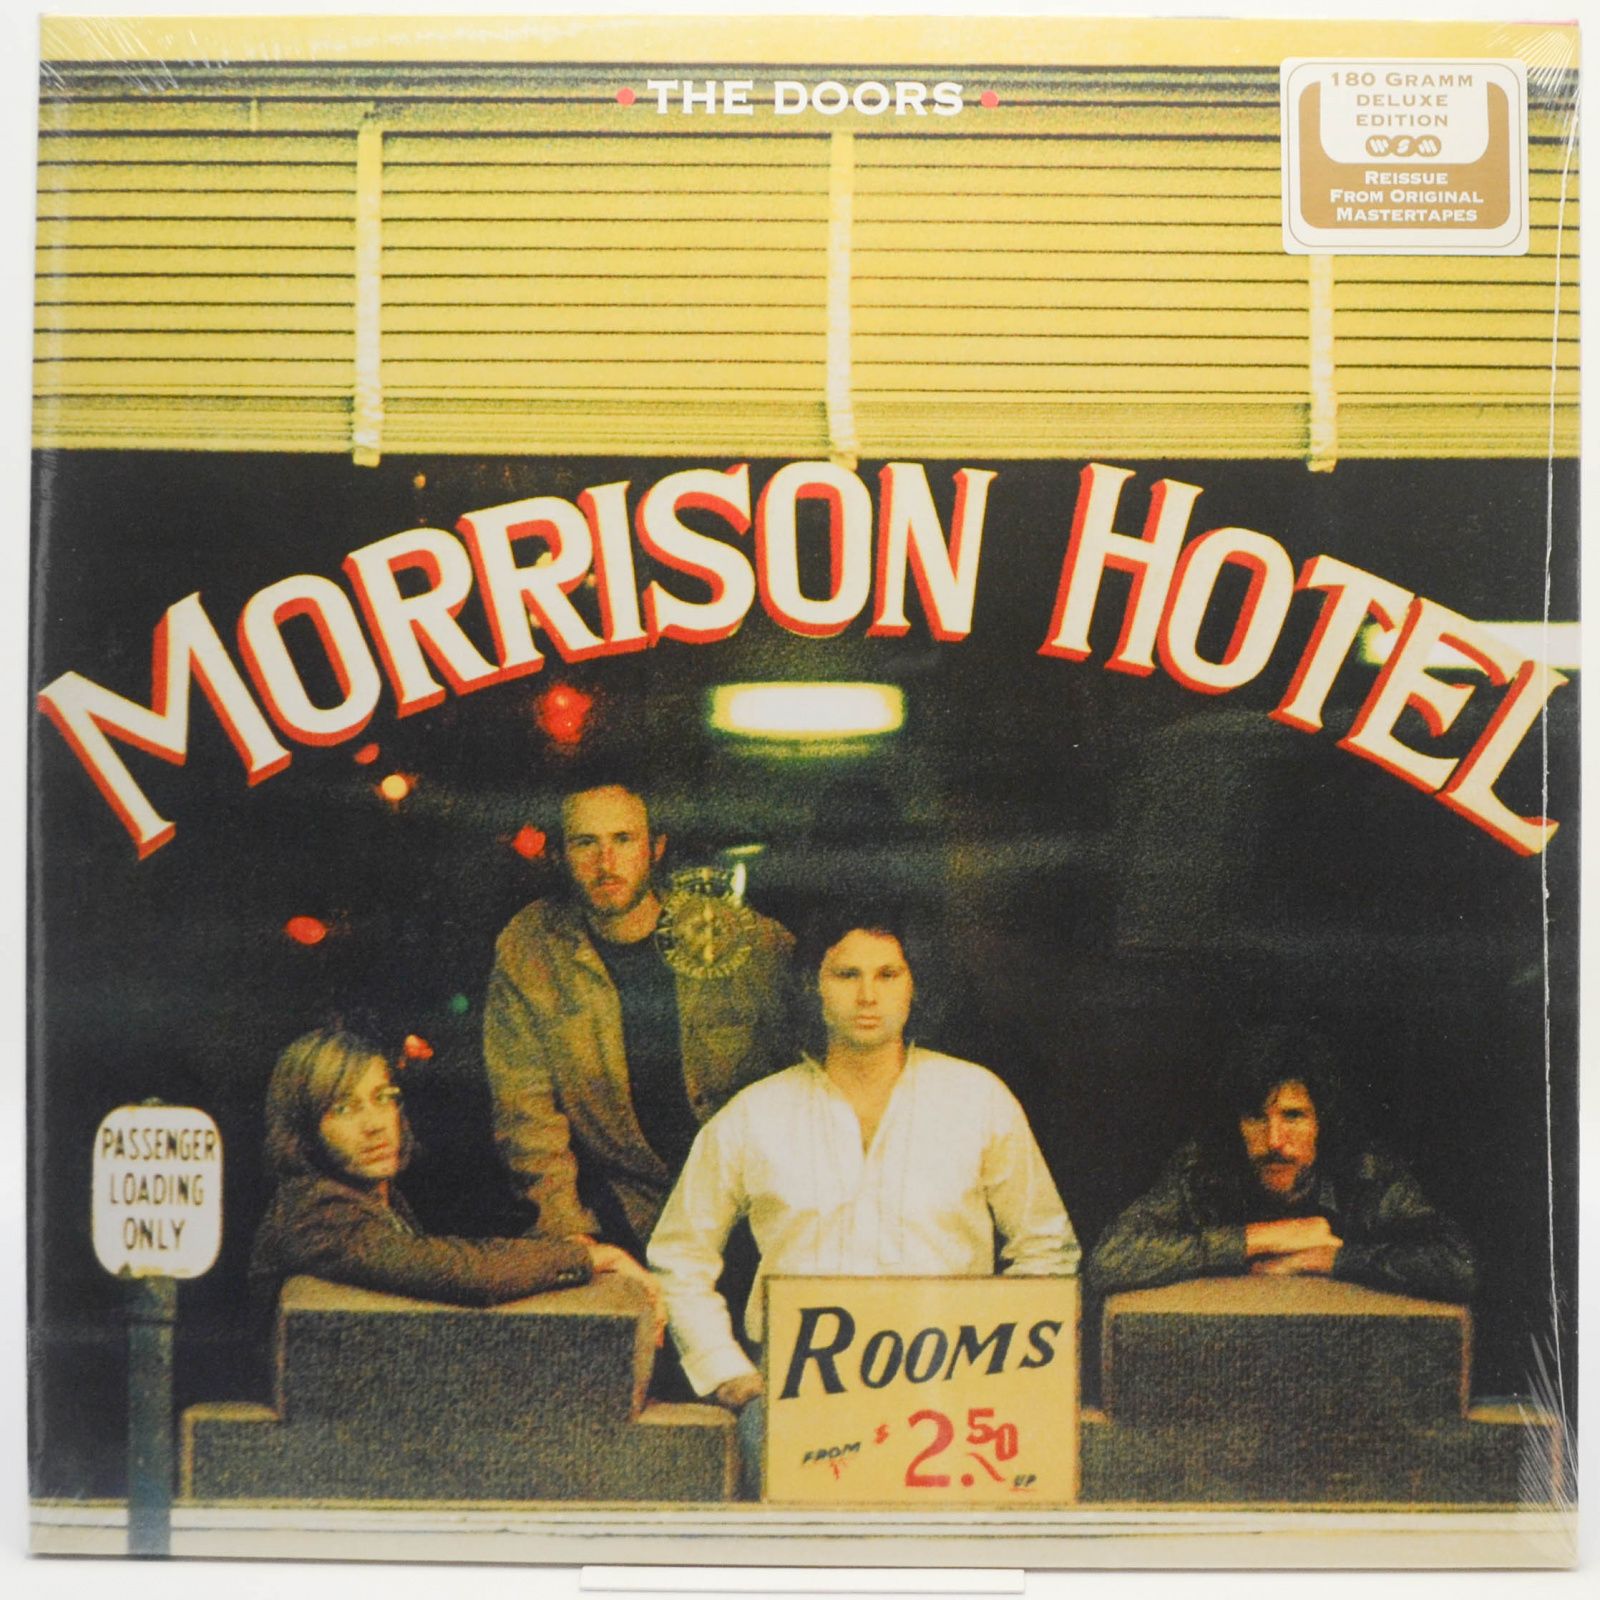 Doors — Morrison Hotel (2LP), 2003